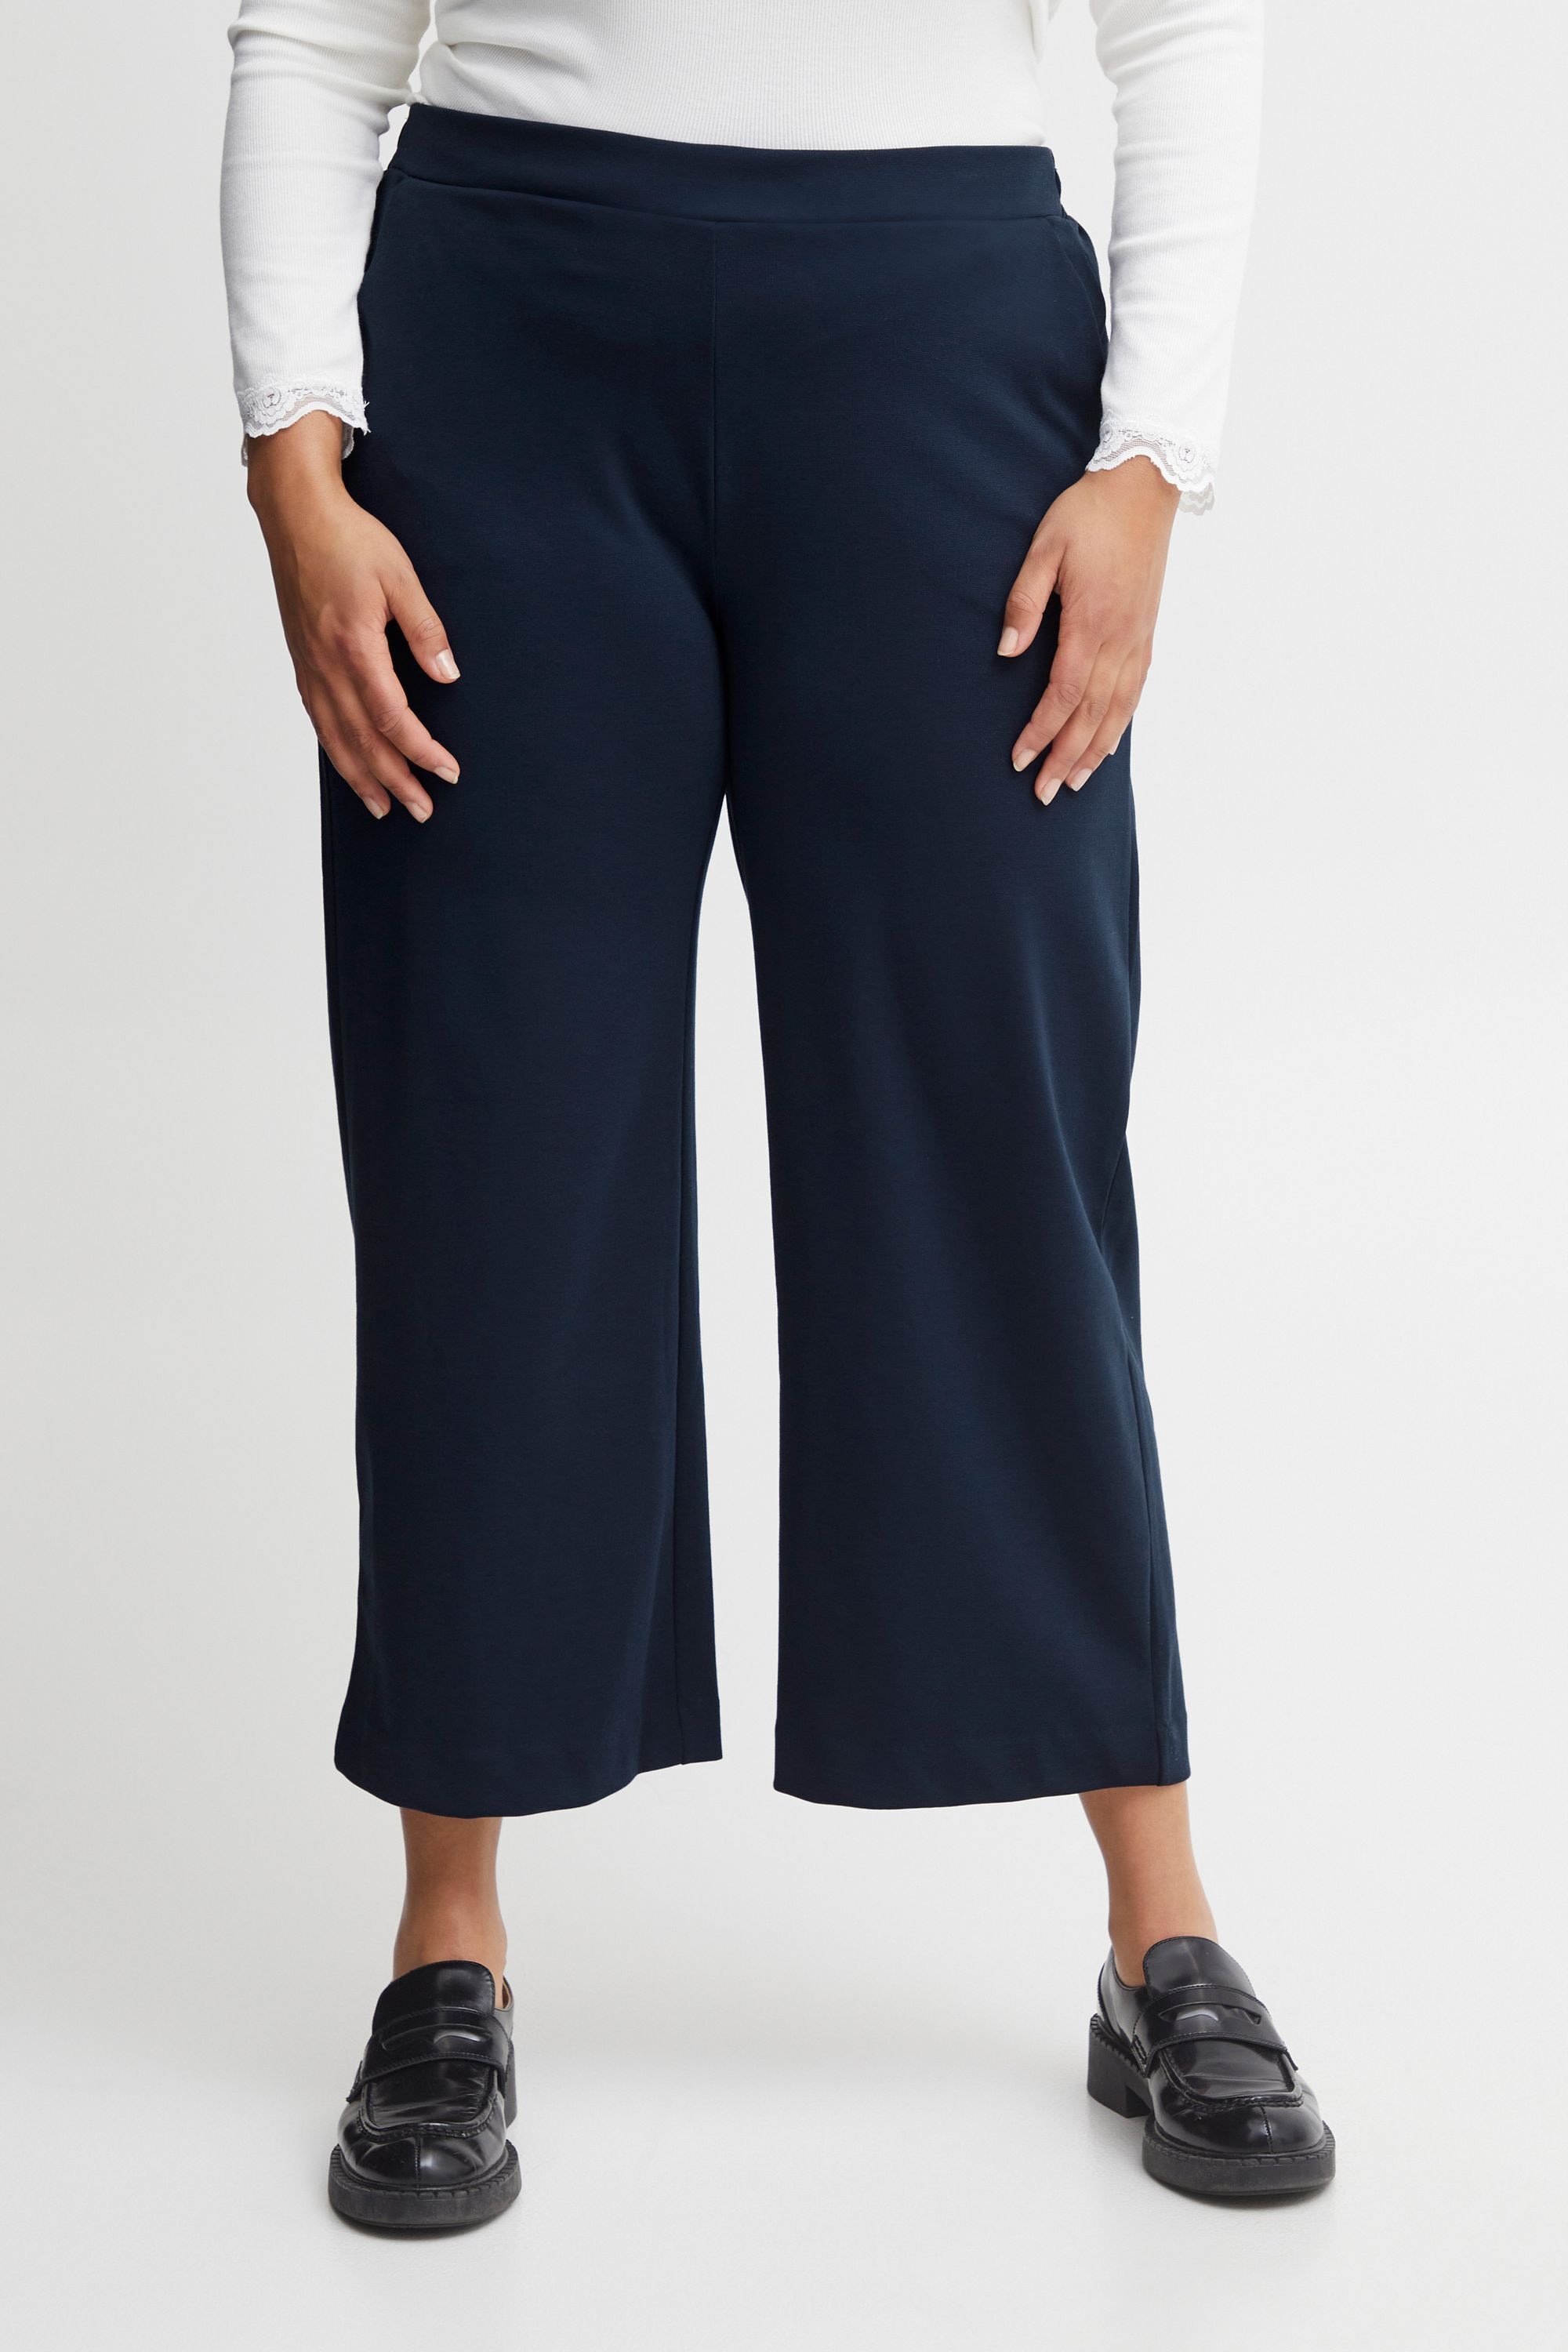 Blaue Hosen für Damen kaufen ▷ dunkel- & hellblau | BAUR